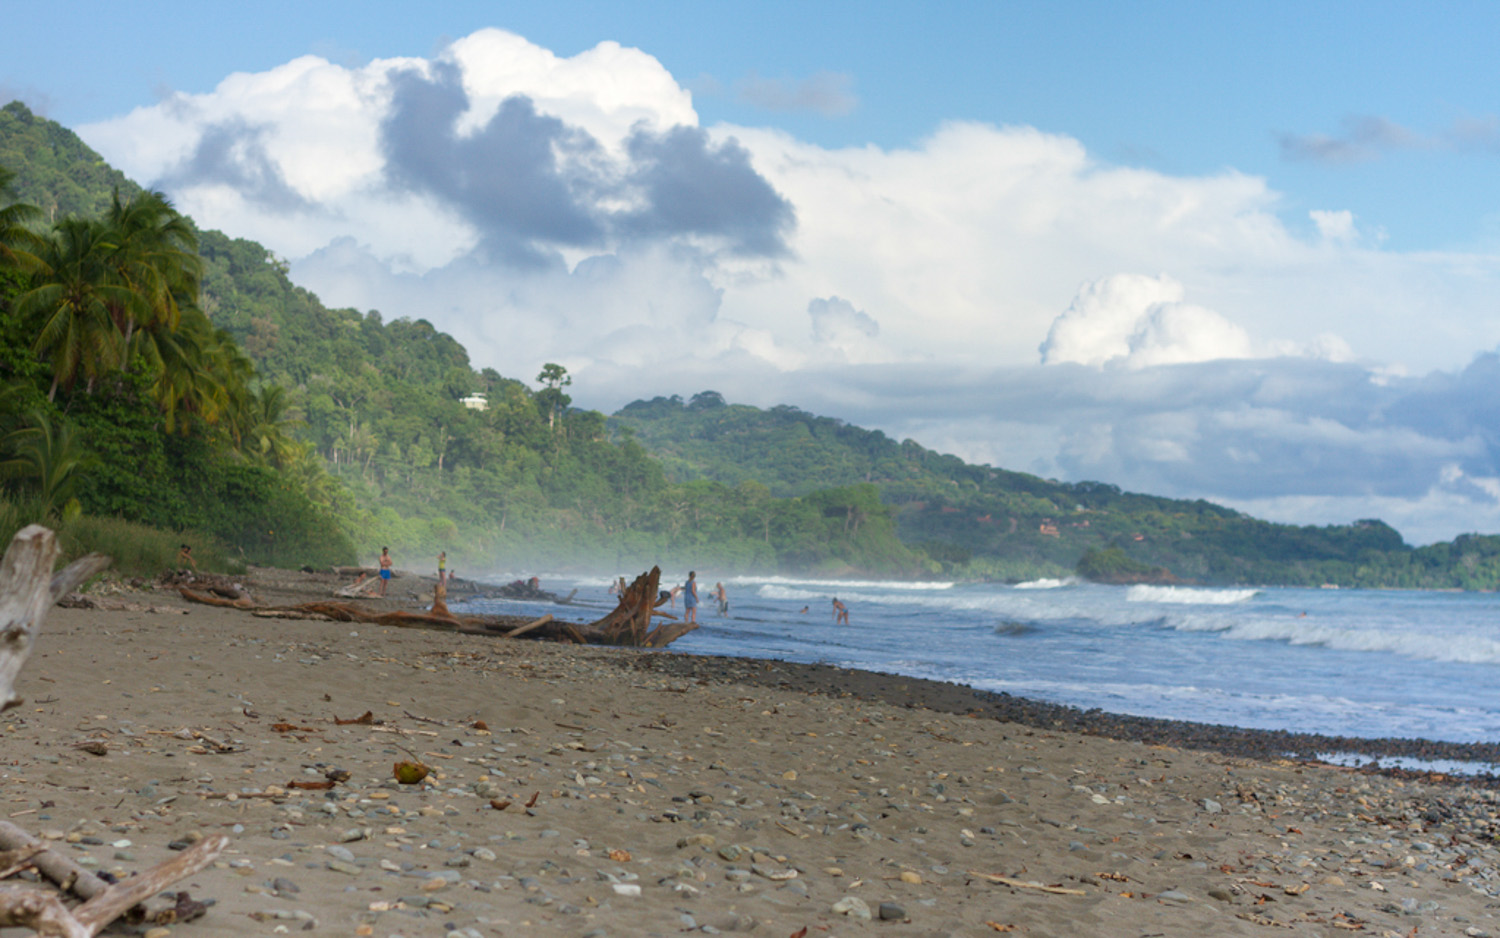 Christian-Schaffer-Costa-Rica-Dominical-Beach-Surf-Jungle.jpg